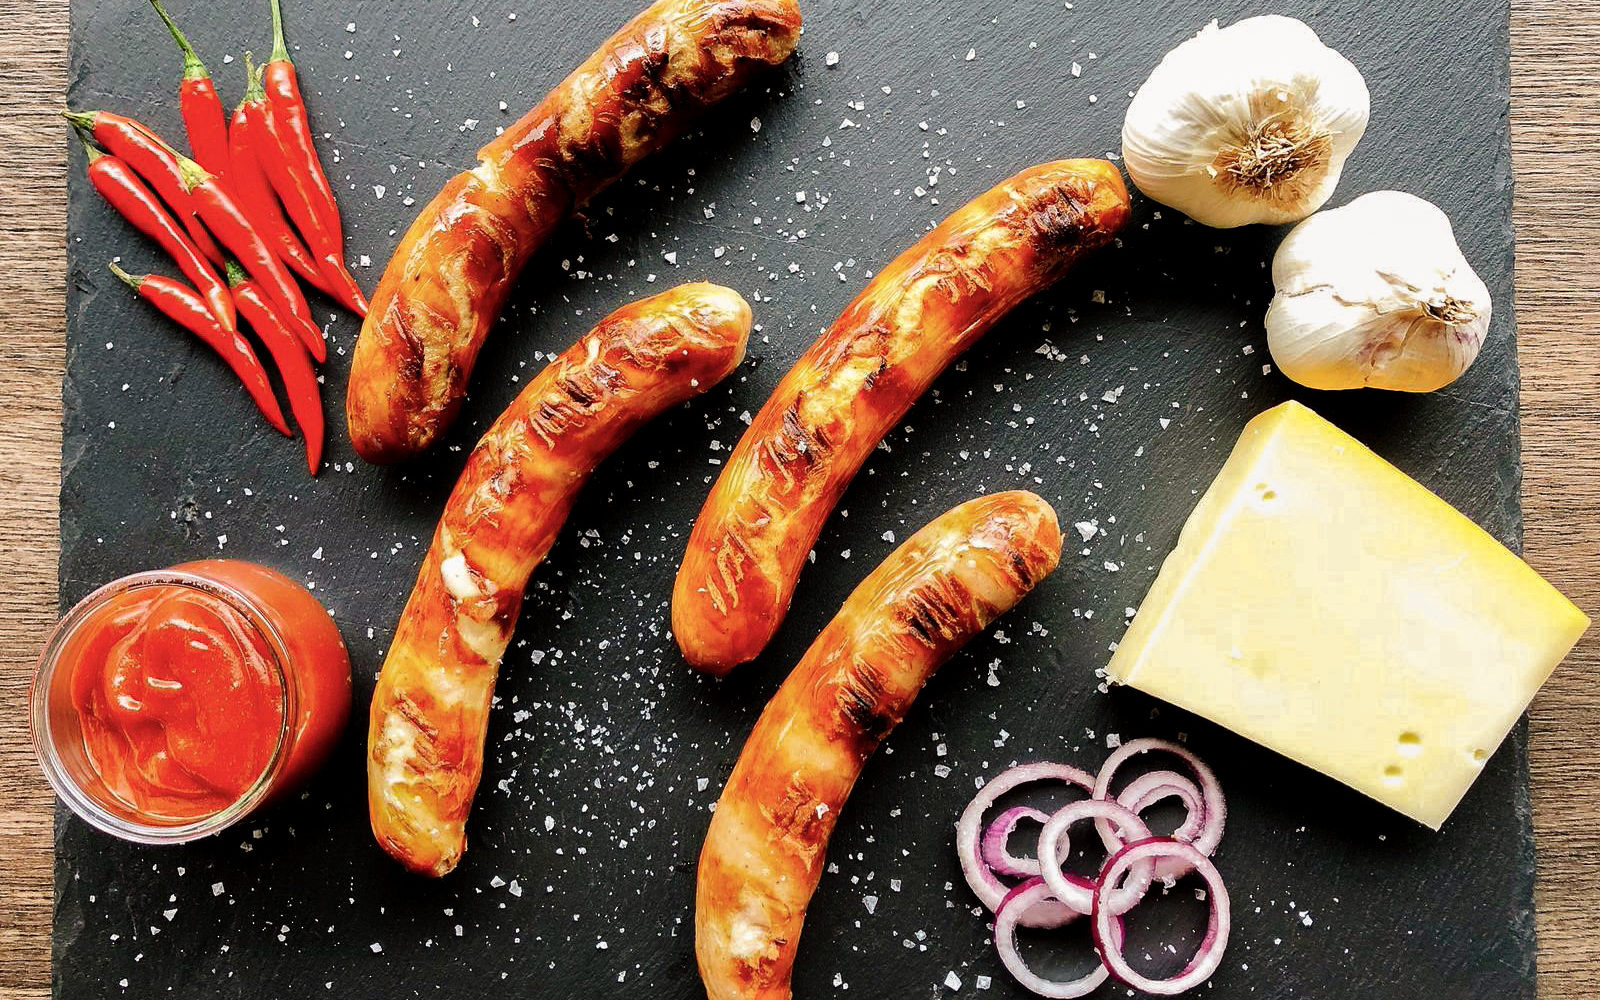 Das Foto zeigt Bratwürste, Knoblach, Chili, Zwiebeln, Käse und Ketchup für eine Ruhrpott Currywurst